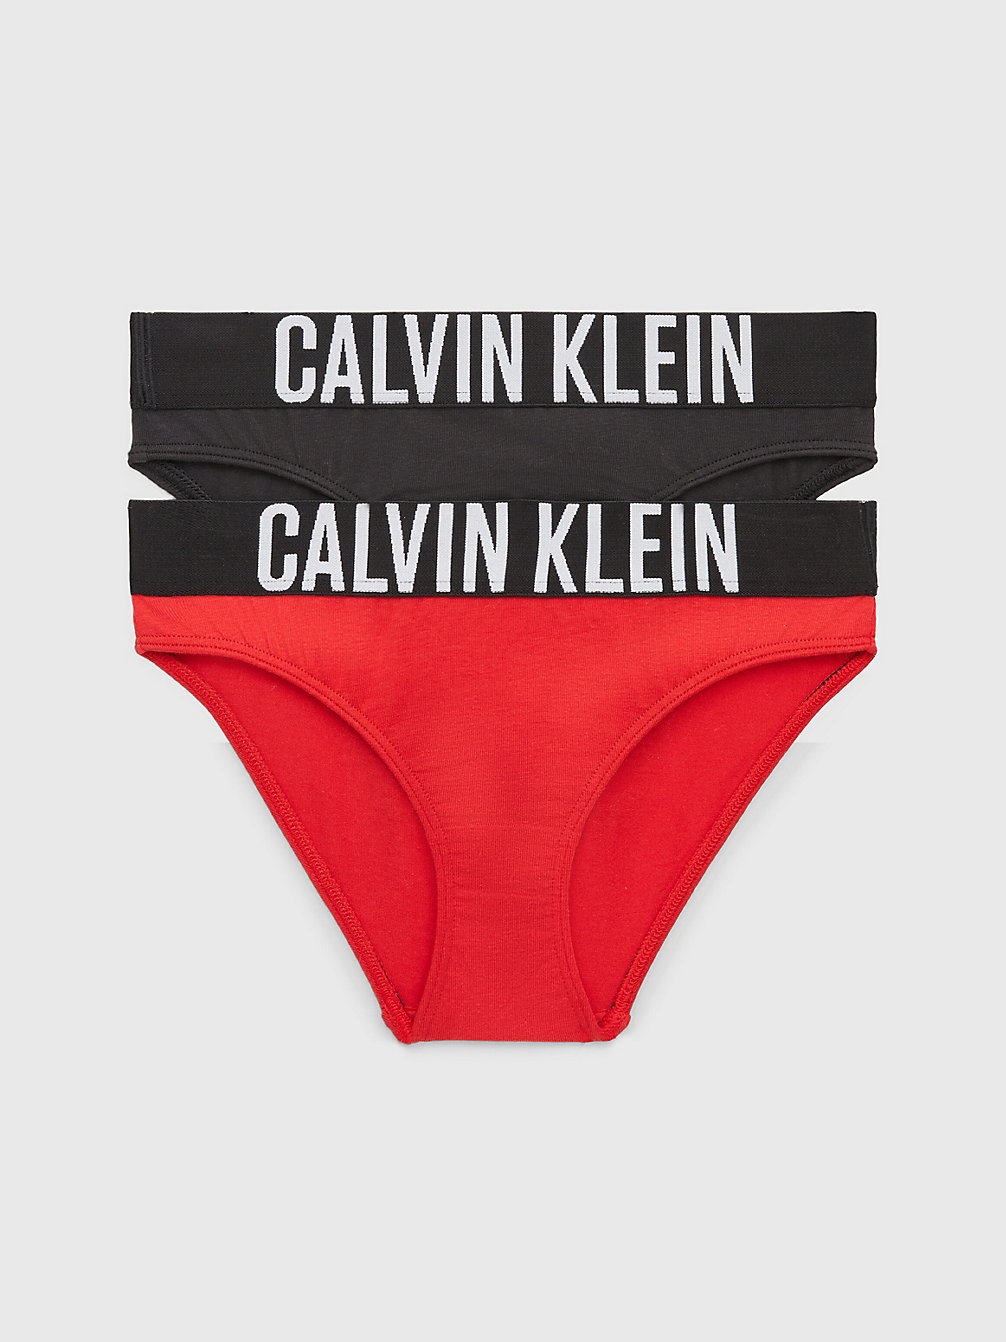 REDHOT/PVHBLACK Lot De 2 Culottes Pour Fille - Intense Power undefined girls Calvin Klein